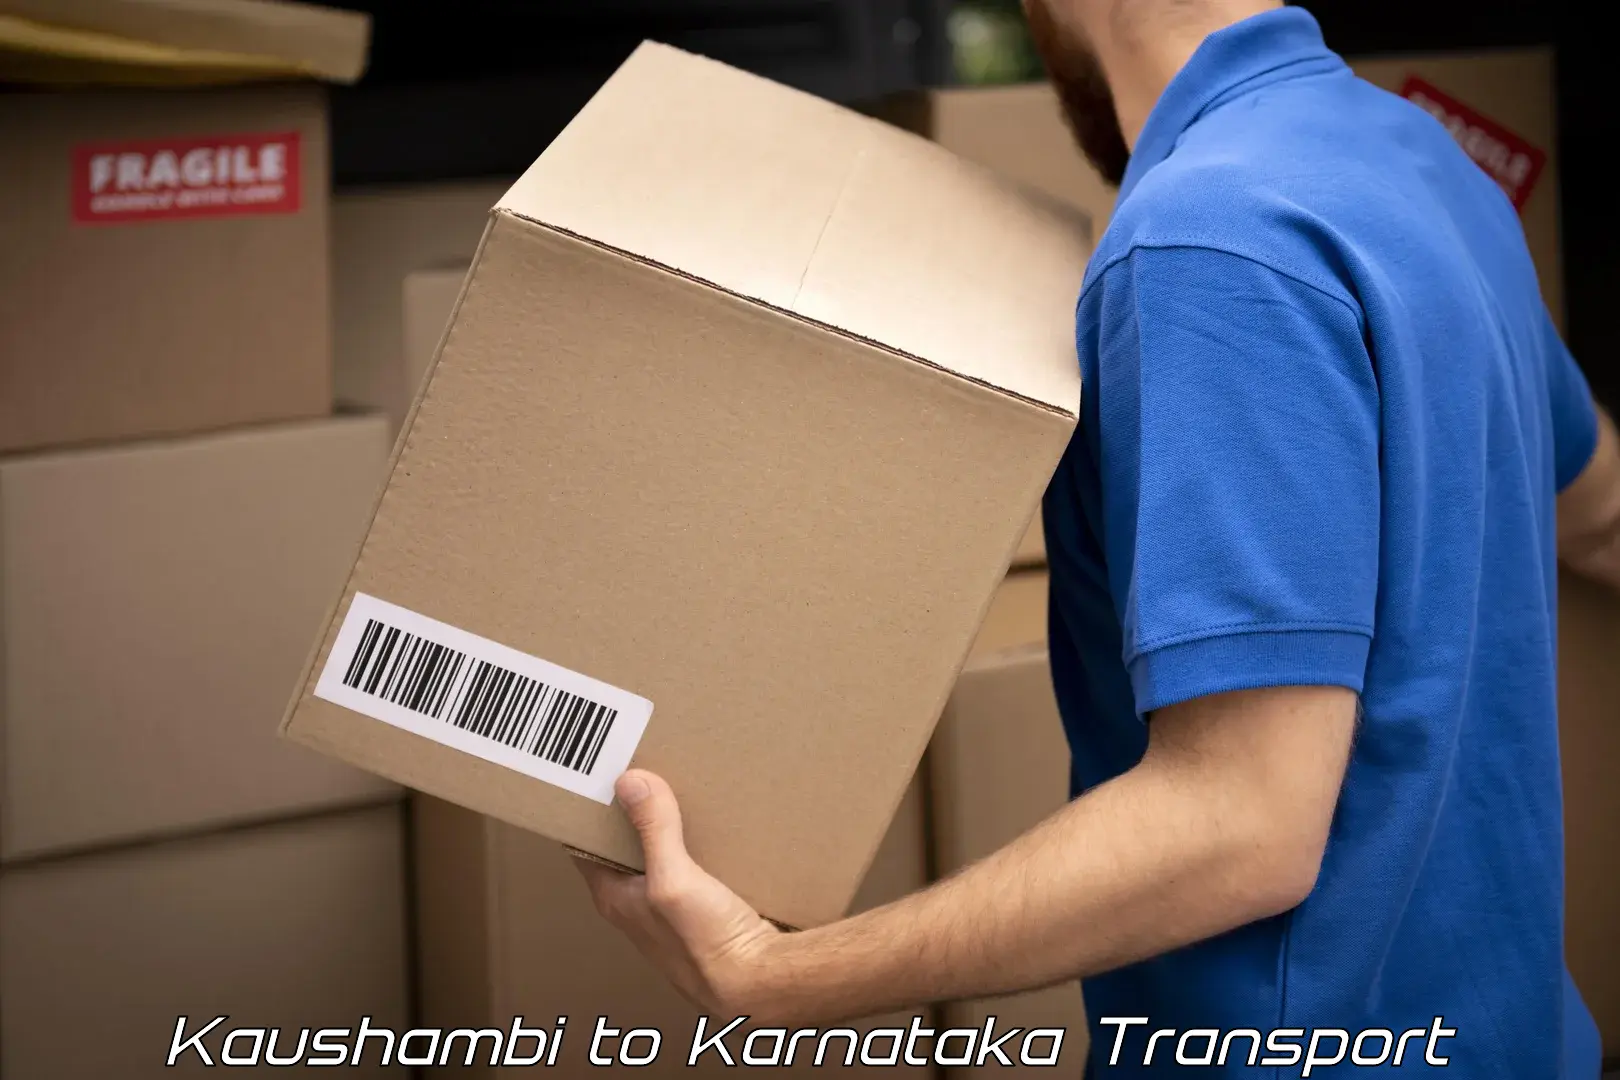 Transport in sharing Kaushambi to Kanjarakatte